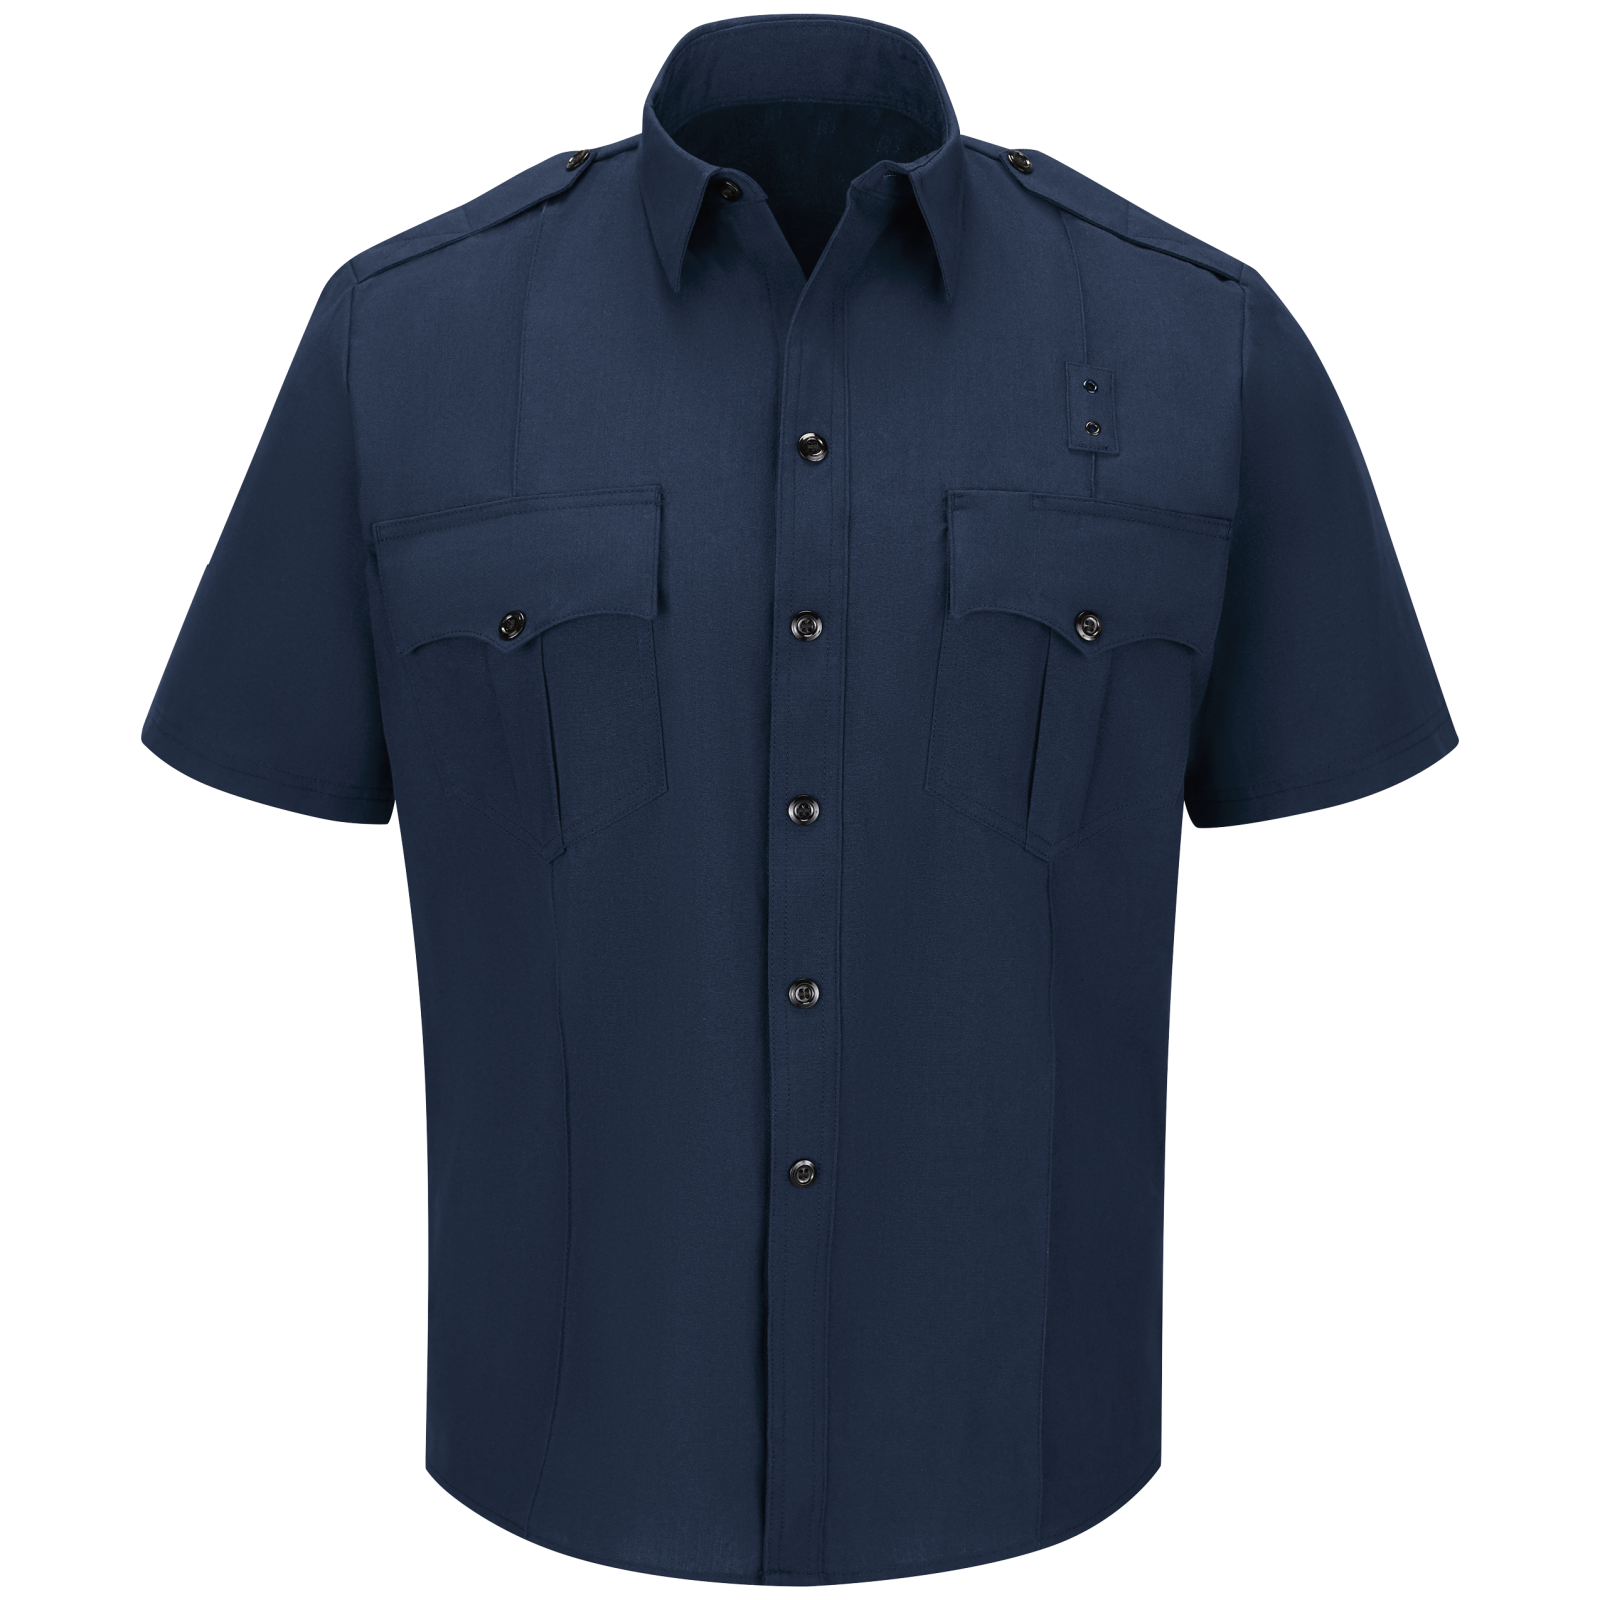 Men's Classic Short Sleeve Fire Officer Shirt